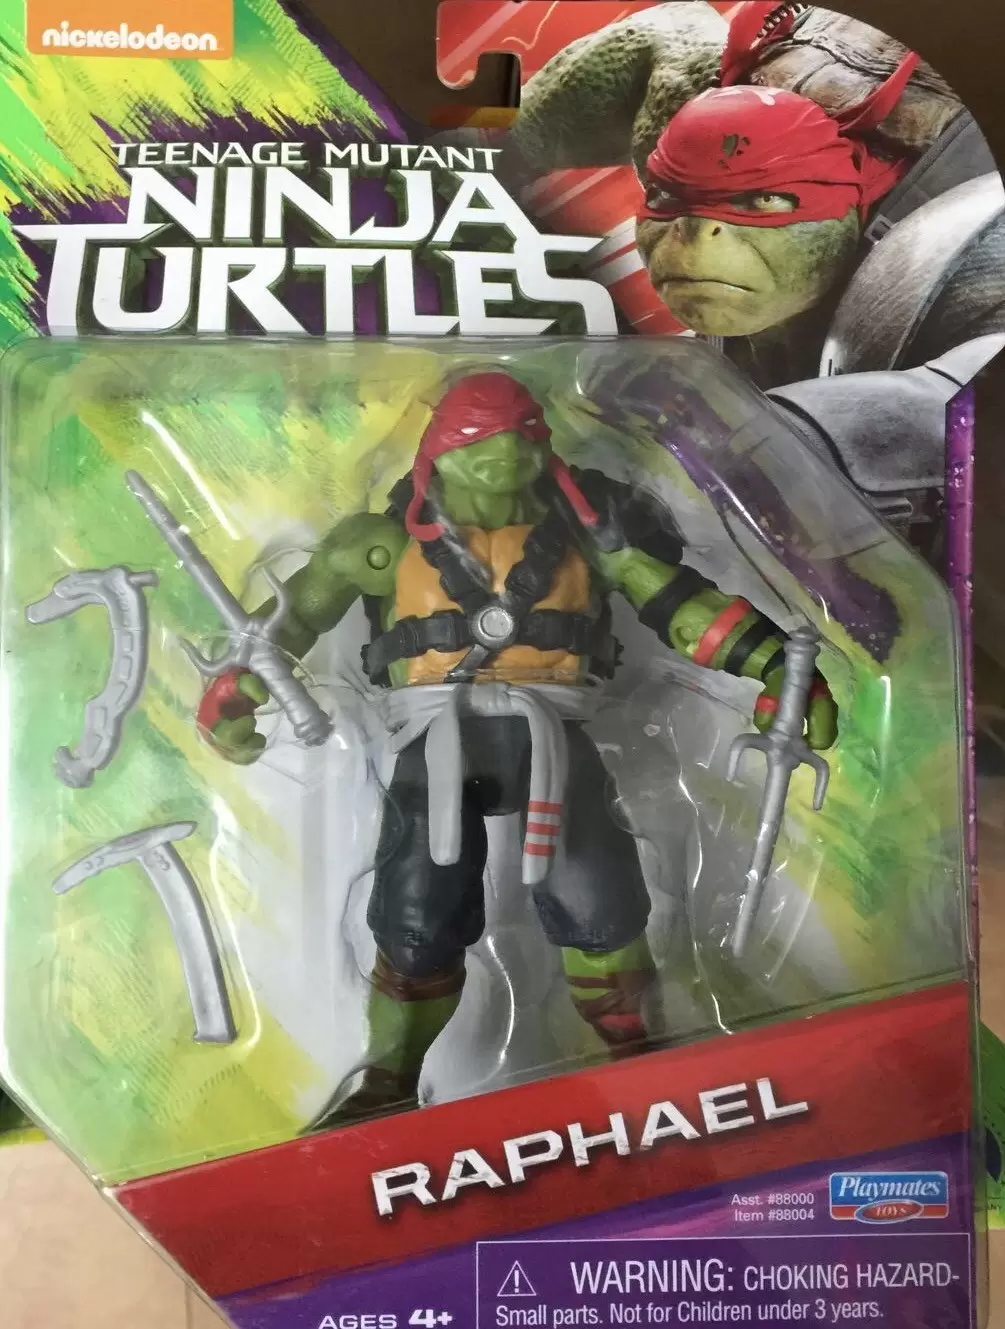 Ninja Turtles II (Film 2016) - Raphael